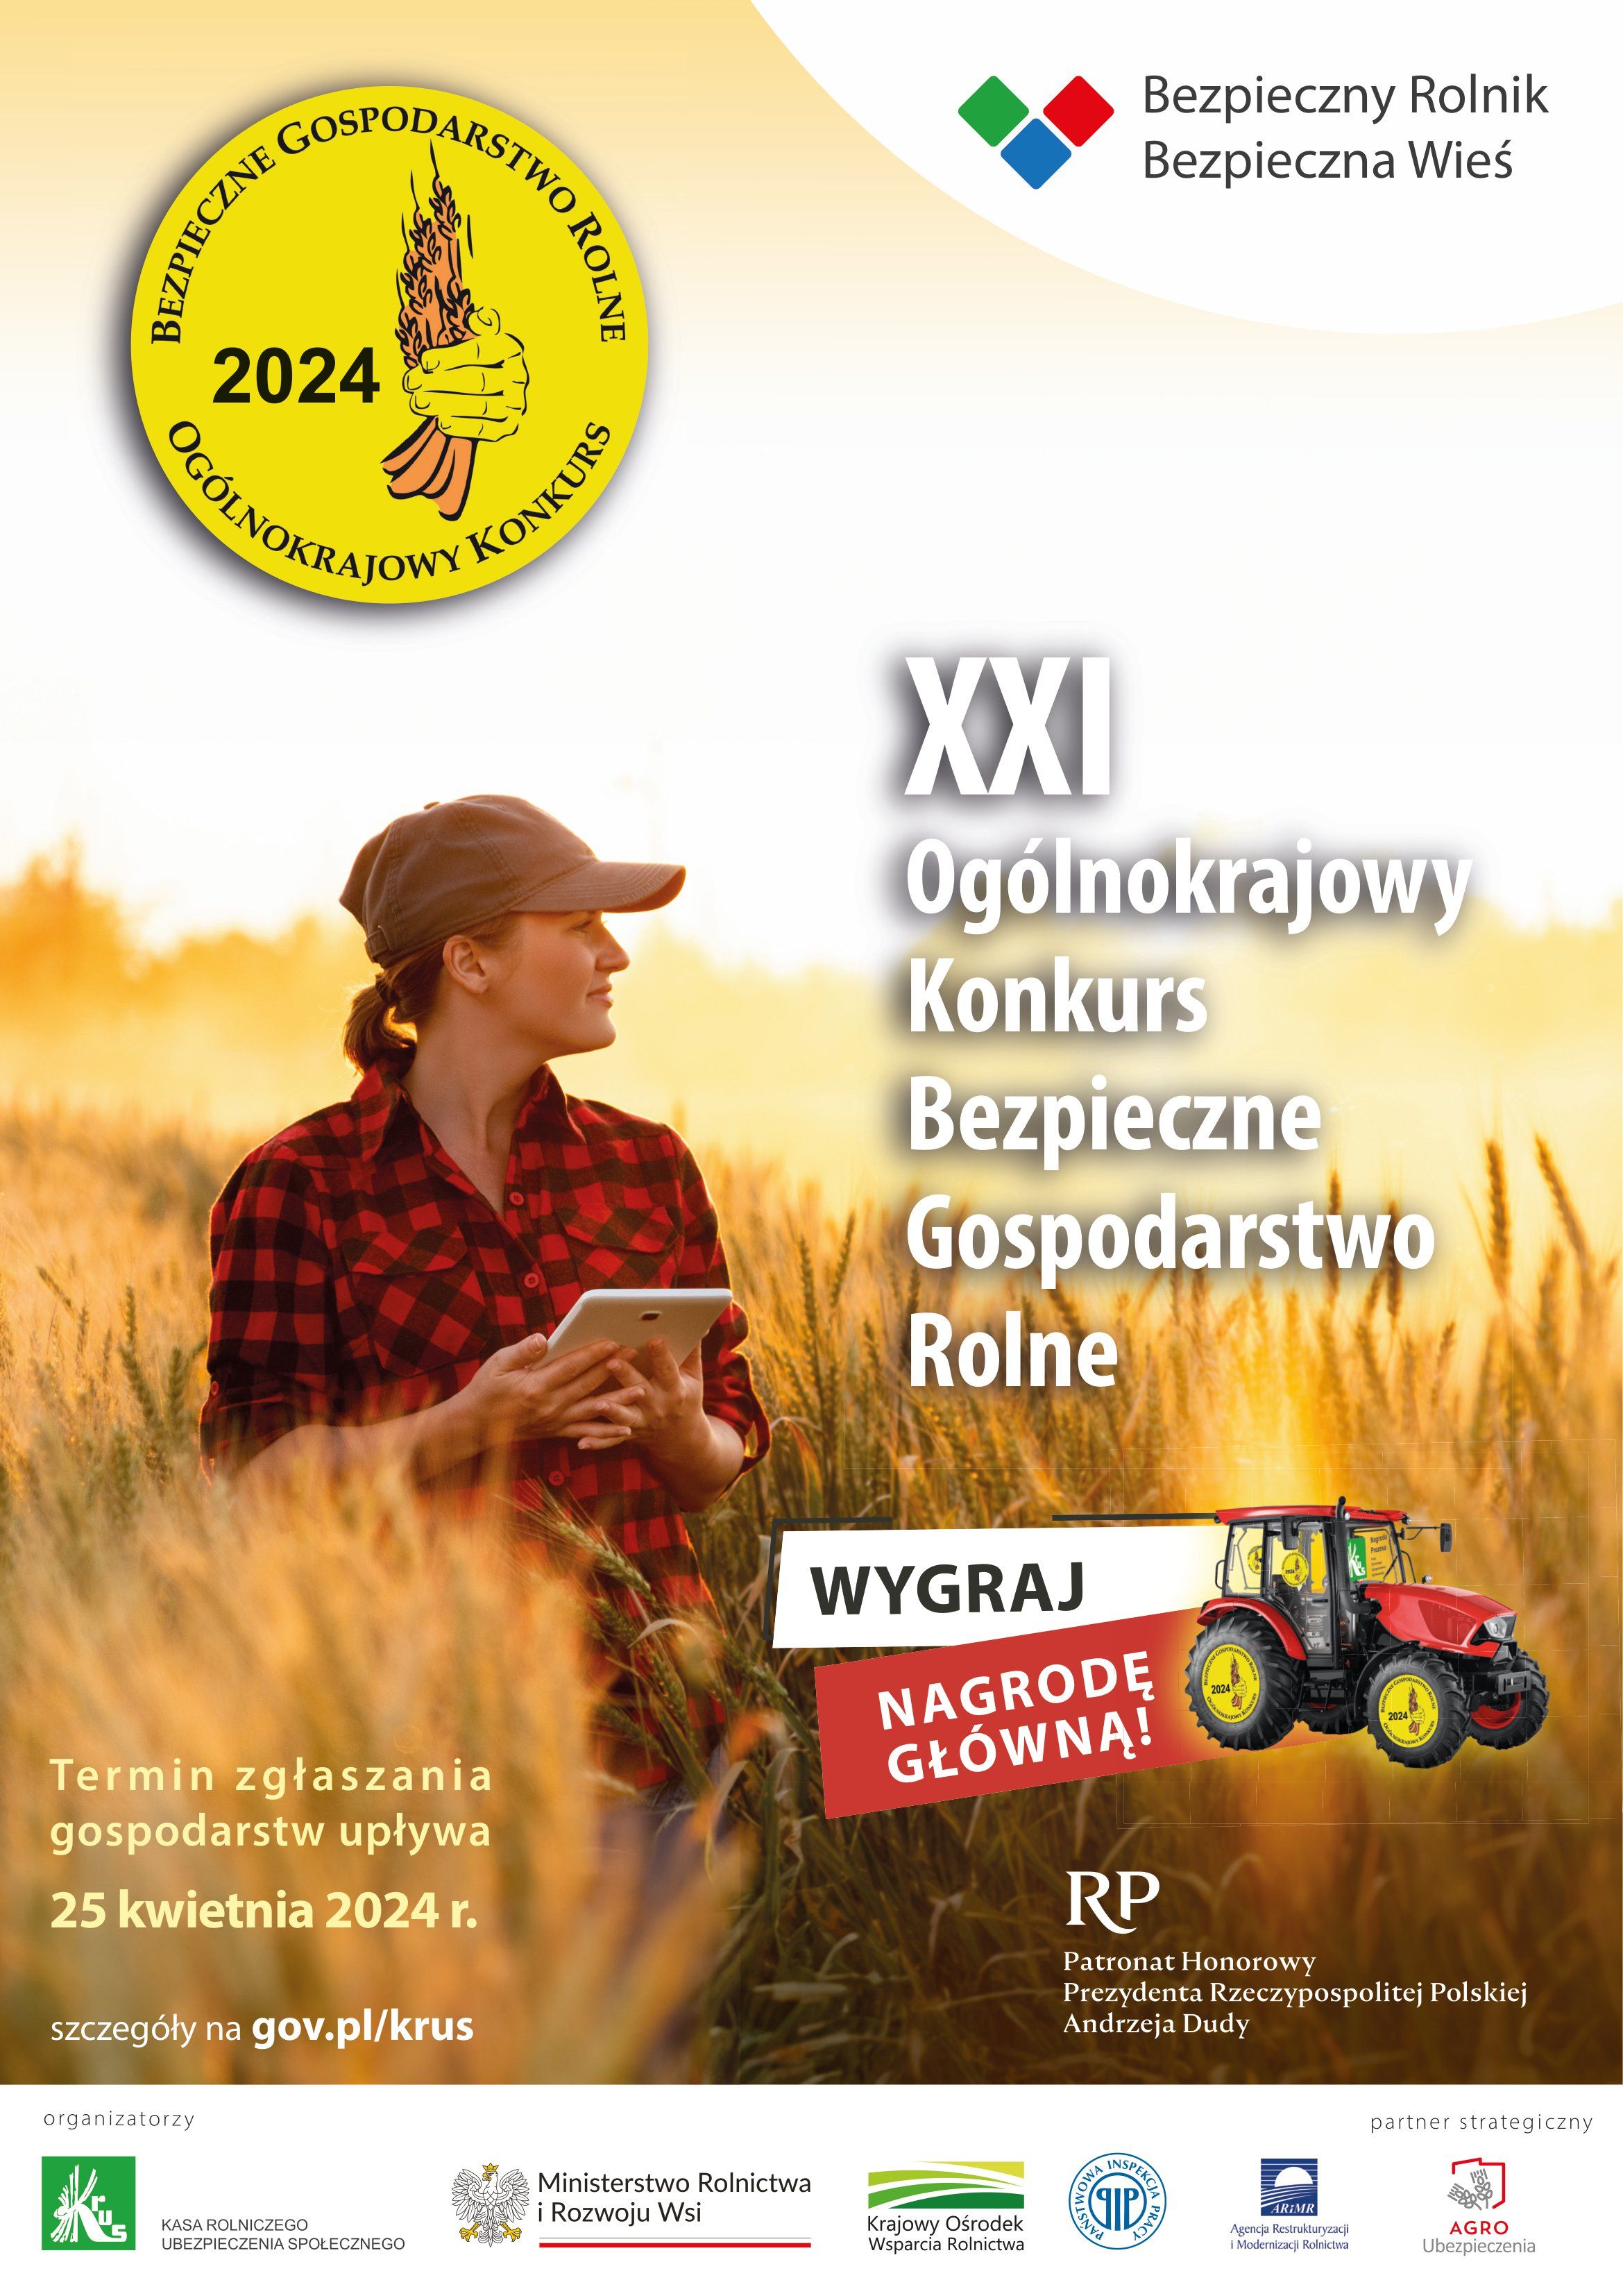 Konkurs Bezpieczne Gospodarstwo Rolne


    
Czytaj więcej na stronie krus.gov.pl

